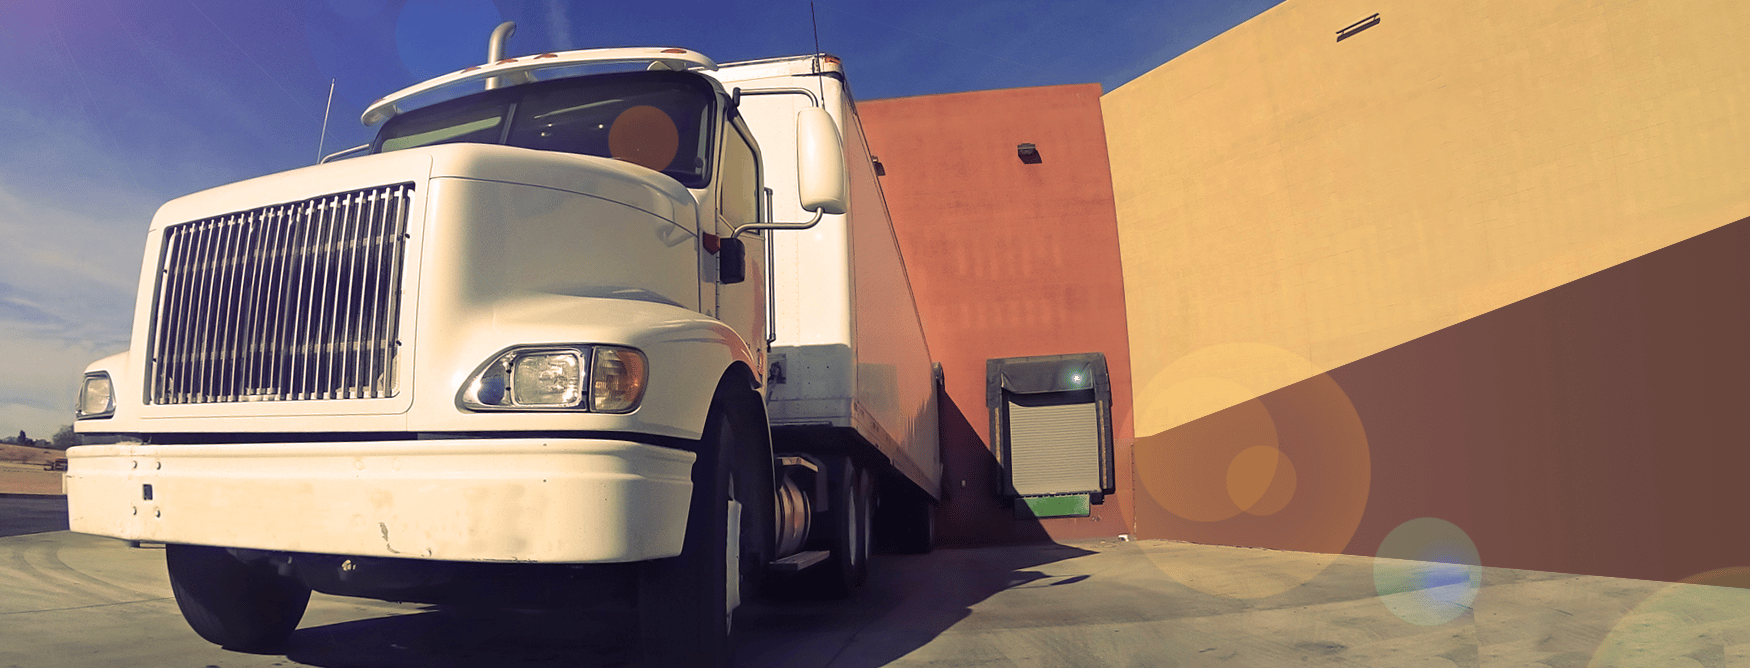 semi truck docking